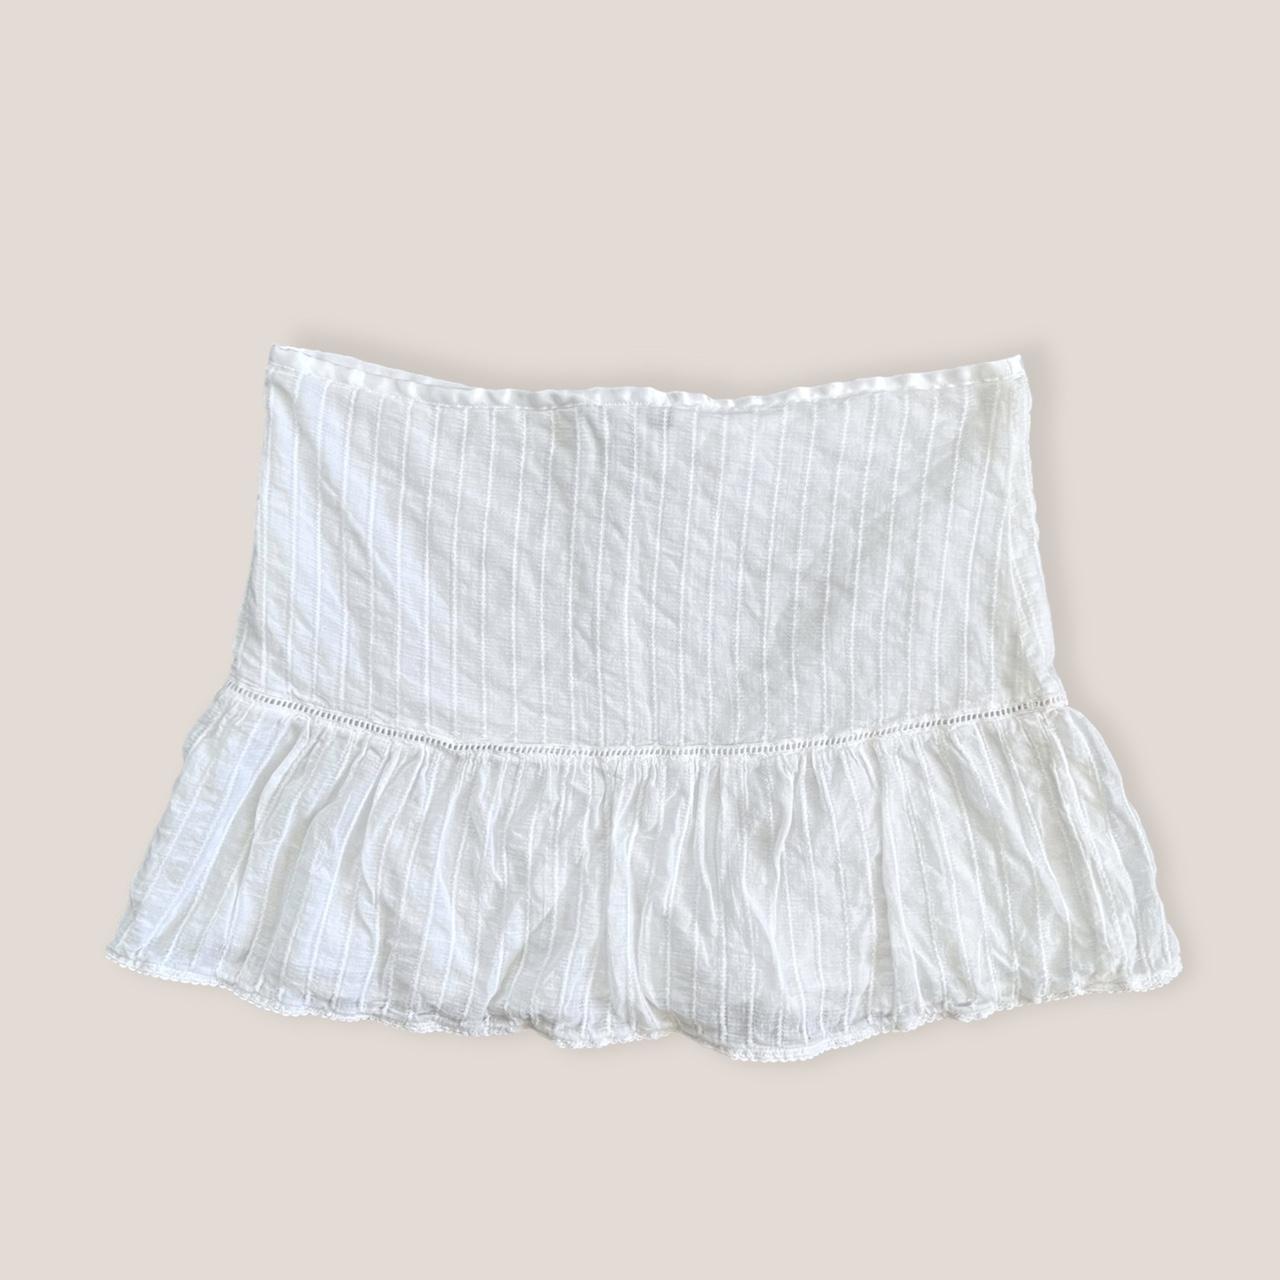 A&F white mini skirt White cotton textured mini... - Depop